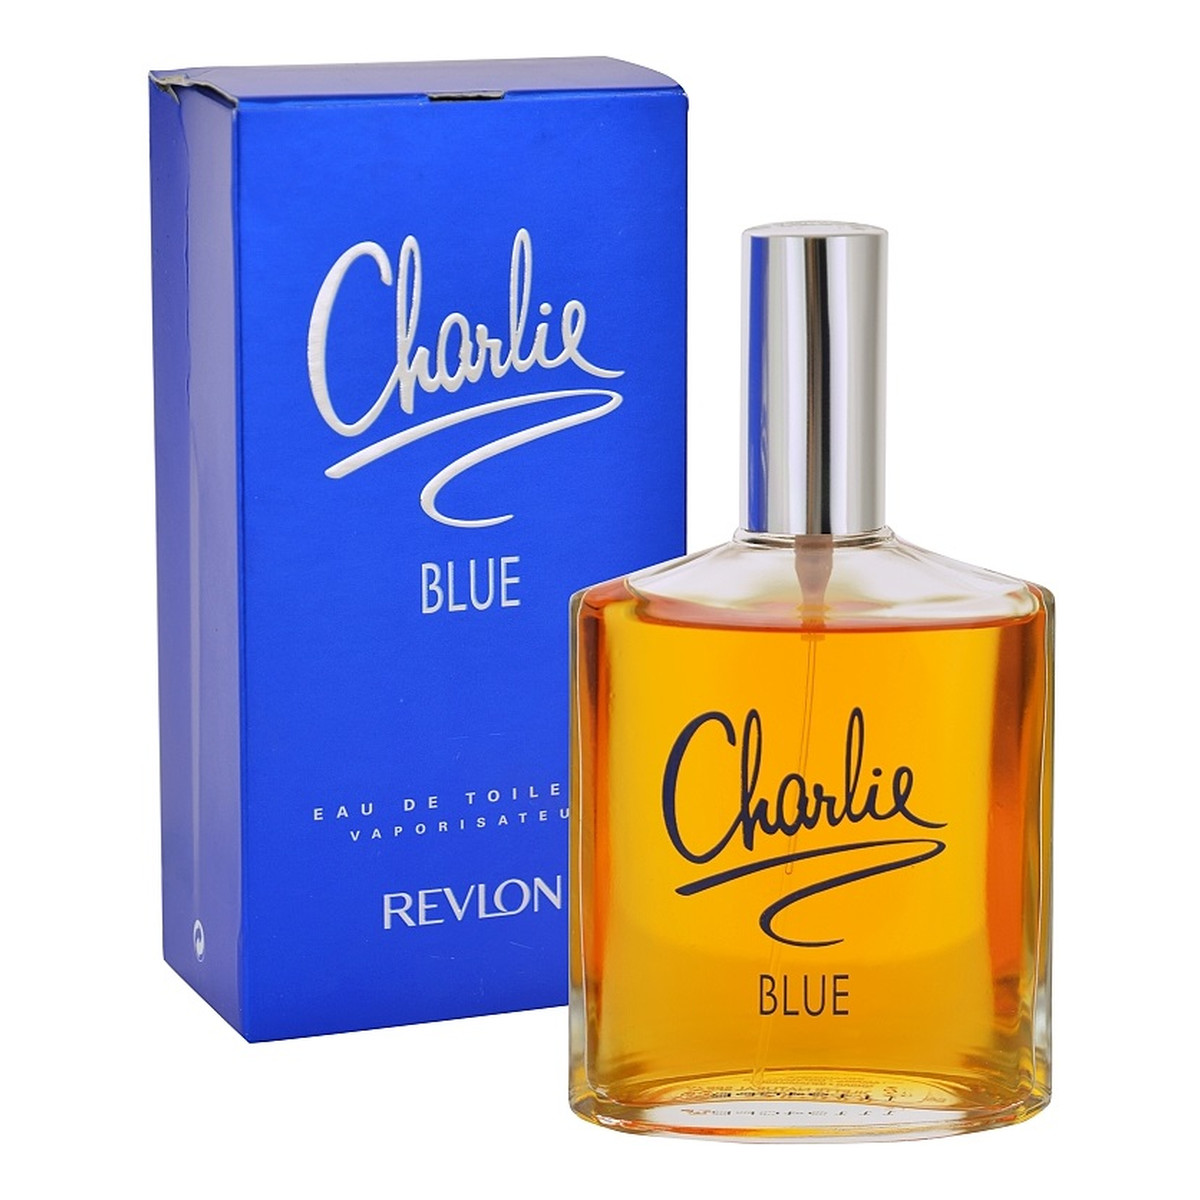 Revlon Charlie Blue woda toaletowa dla kobiet 100ml